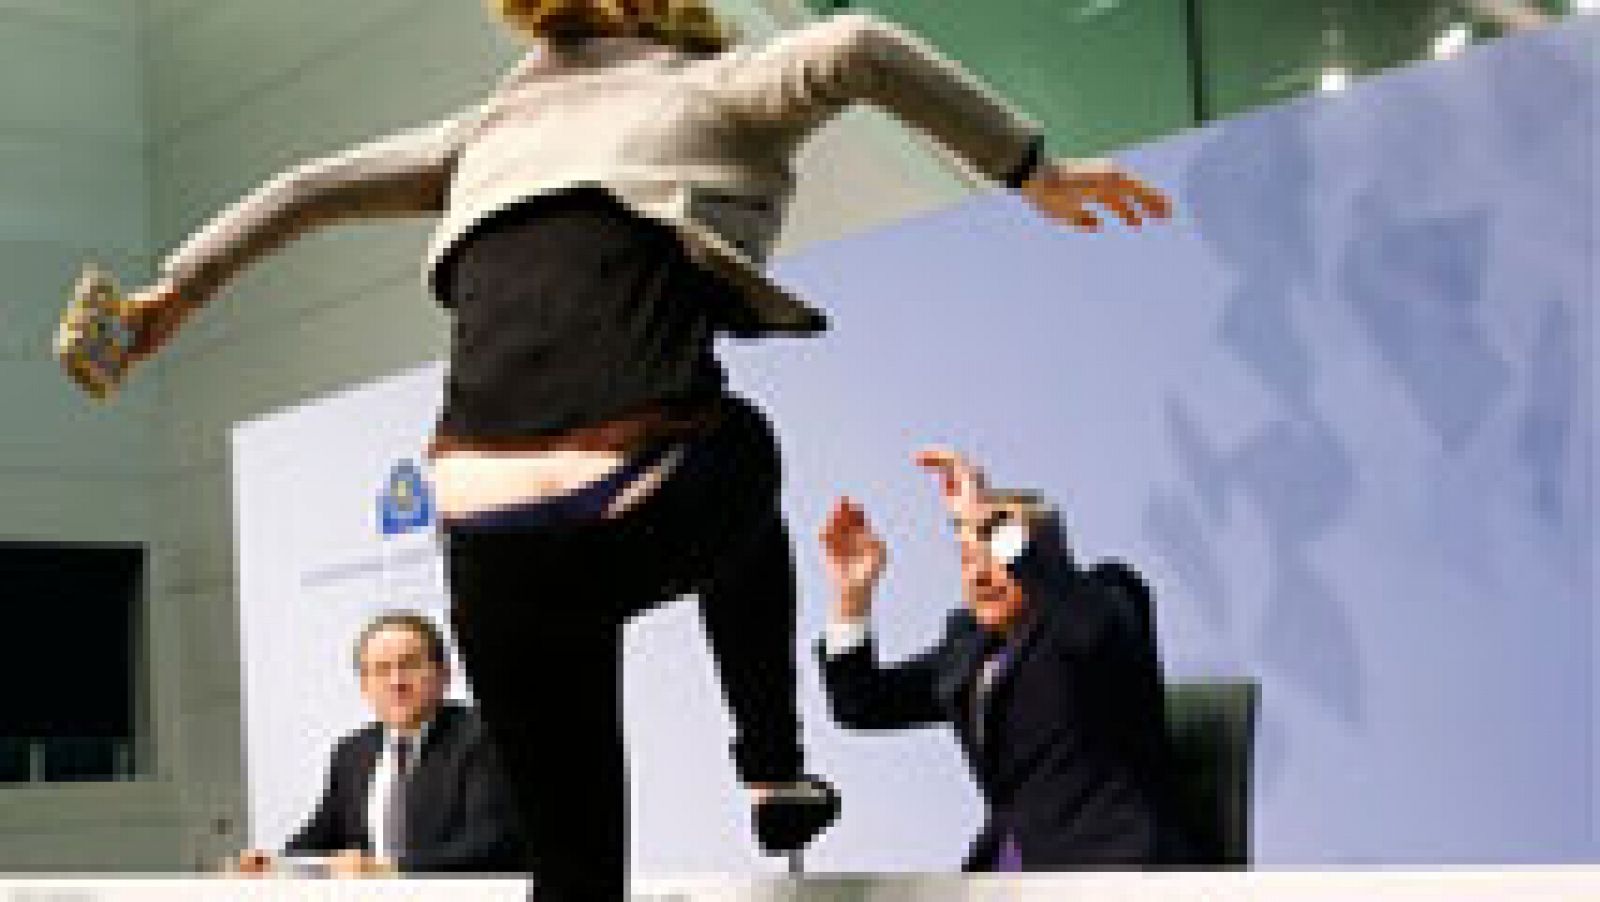 Una activista interrumpe la rueda de prensa de Draghi al grito de "hay que acabar con la dictadura del BCE"